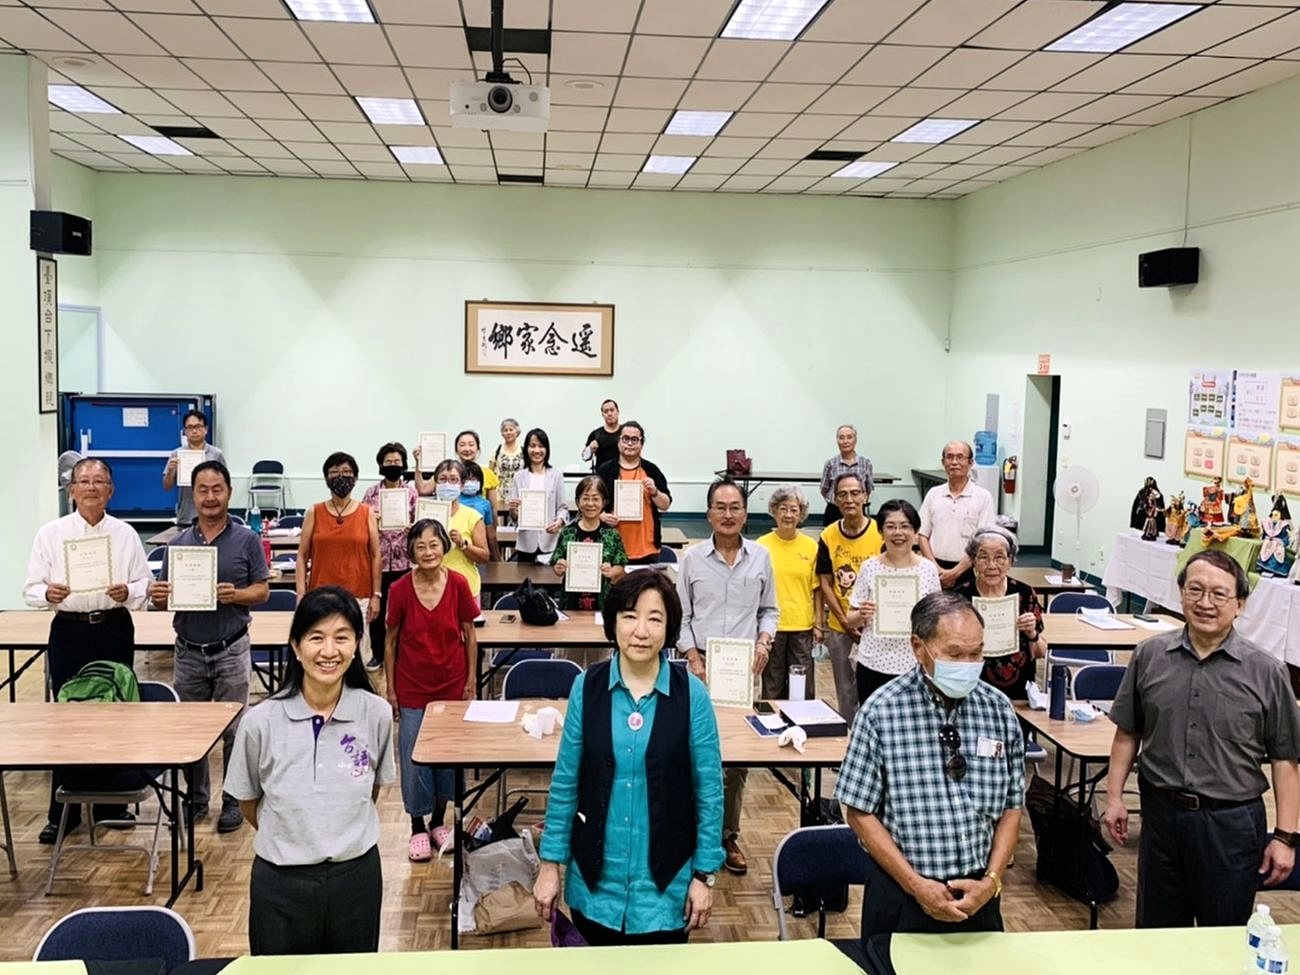 洛杉磯 台灣學校 2021年『海外台語文教師研習會』圖片